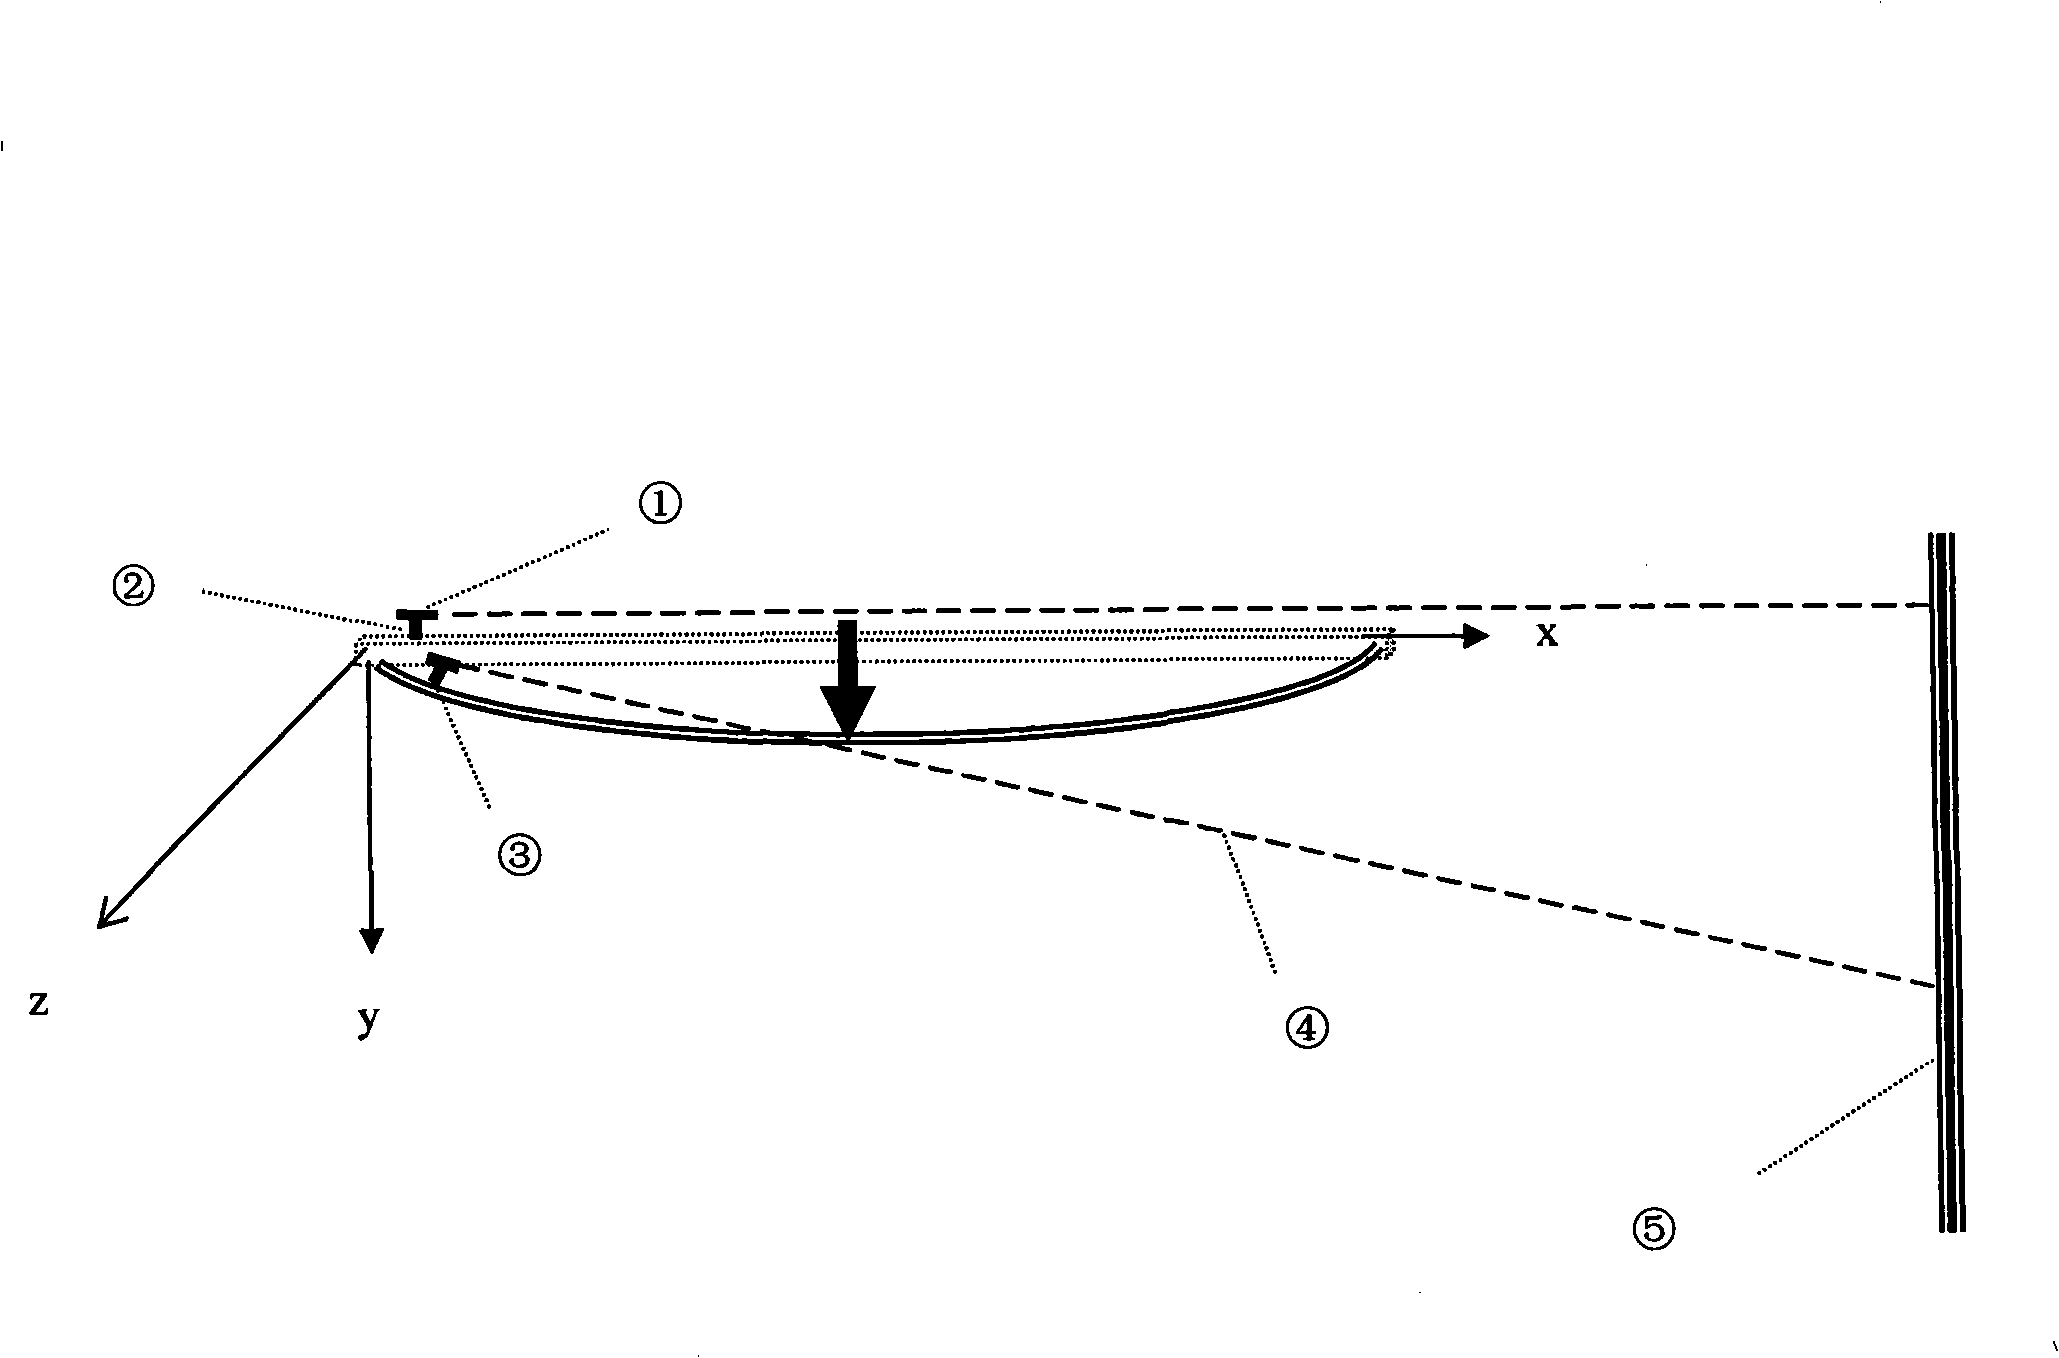 Laser amplifying measurement method for bending structure deformation